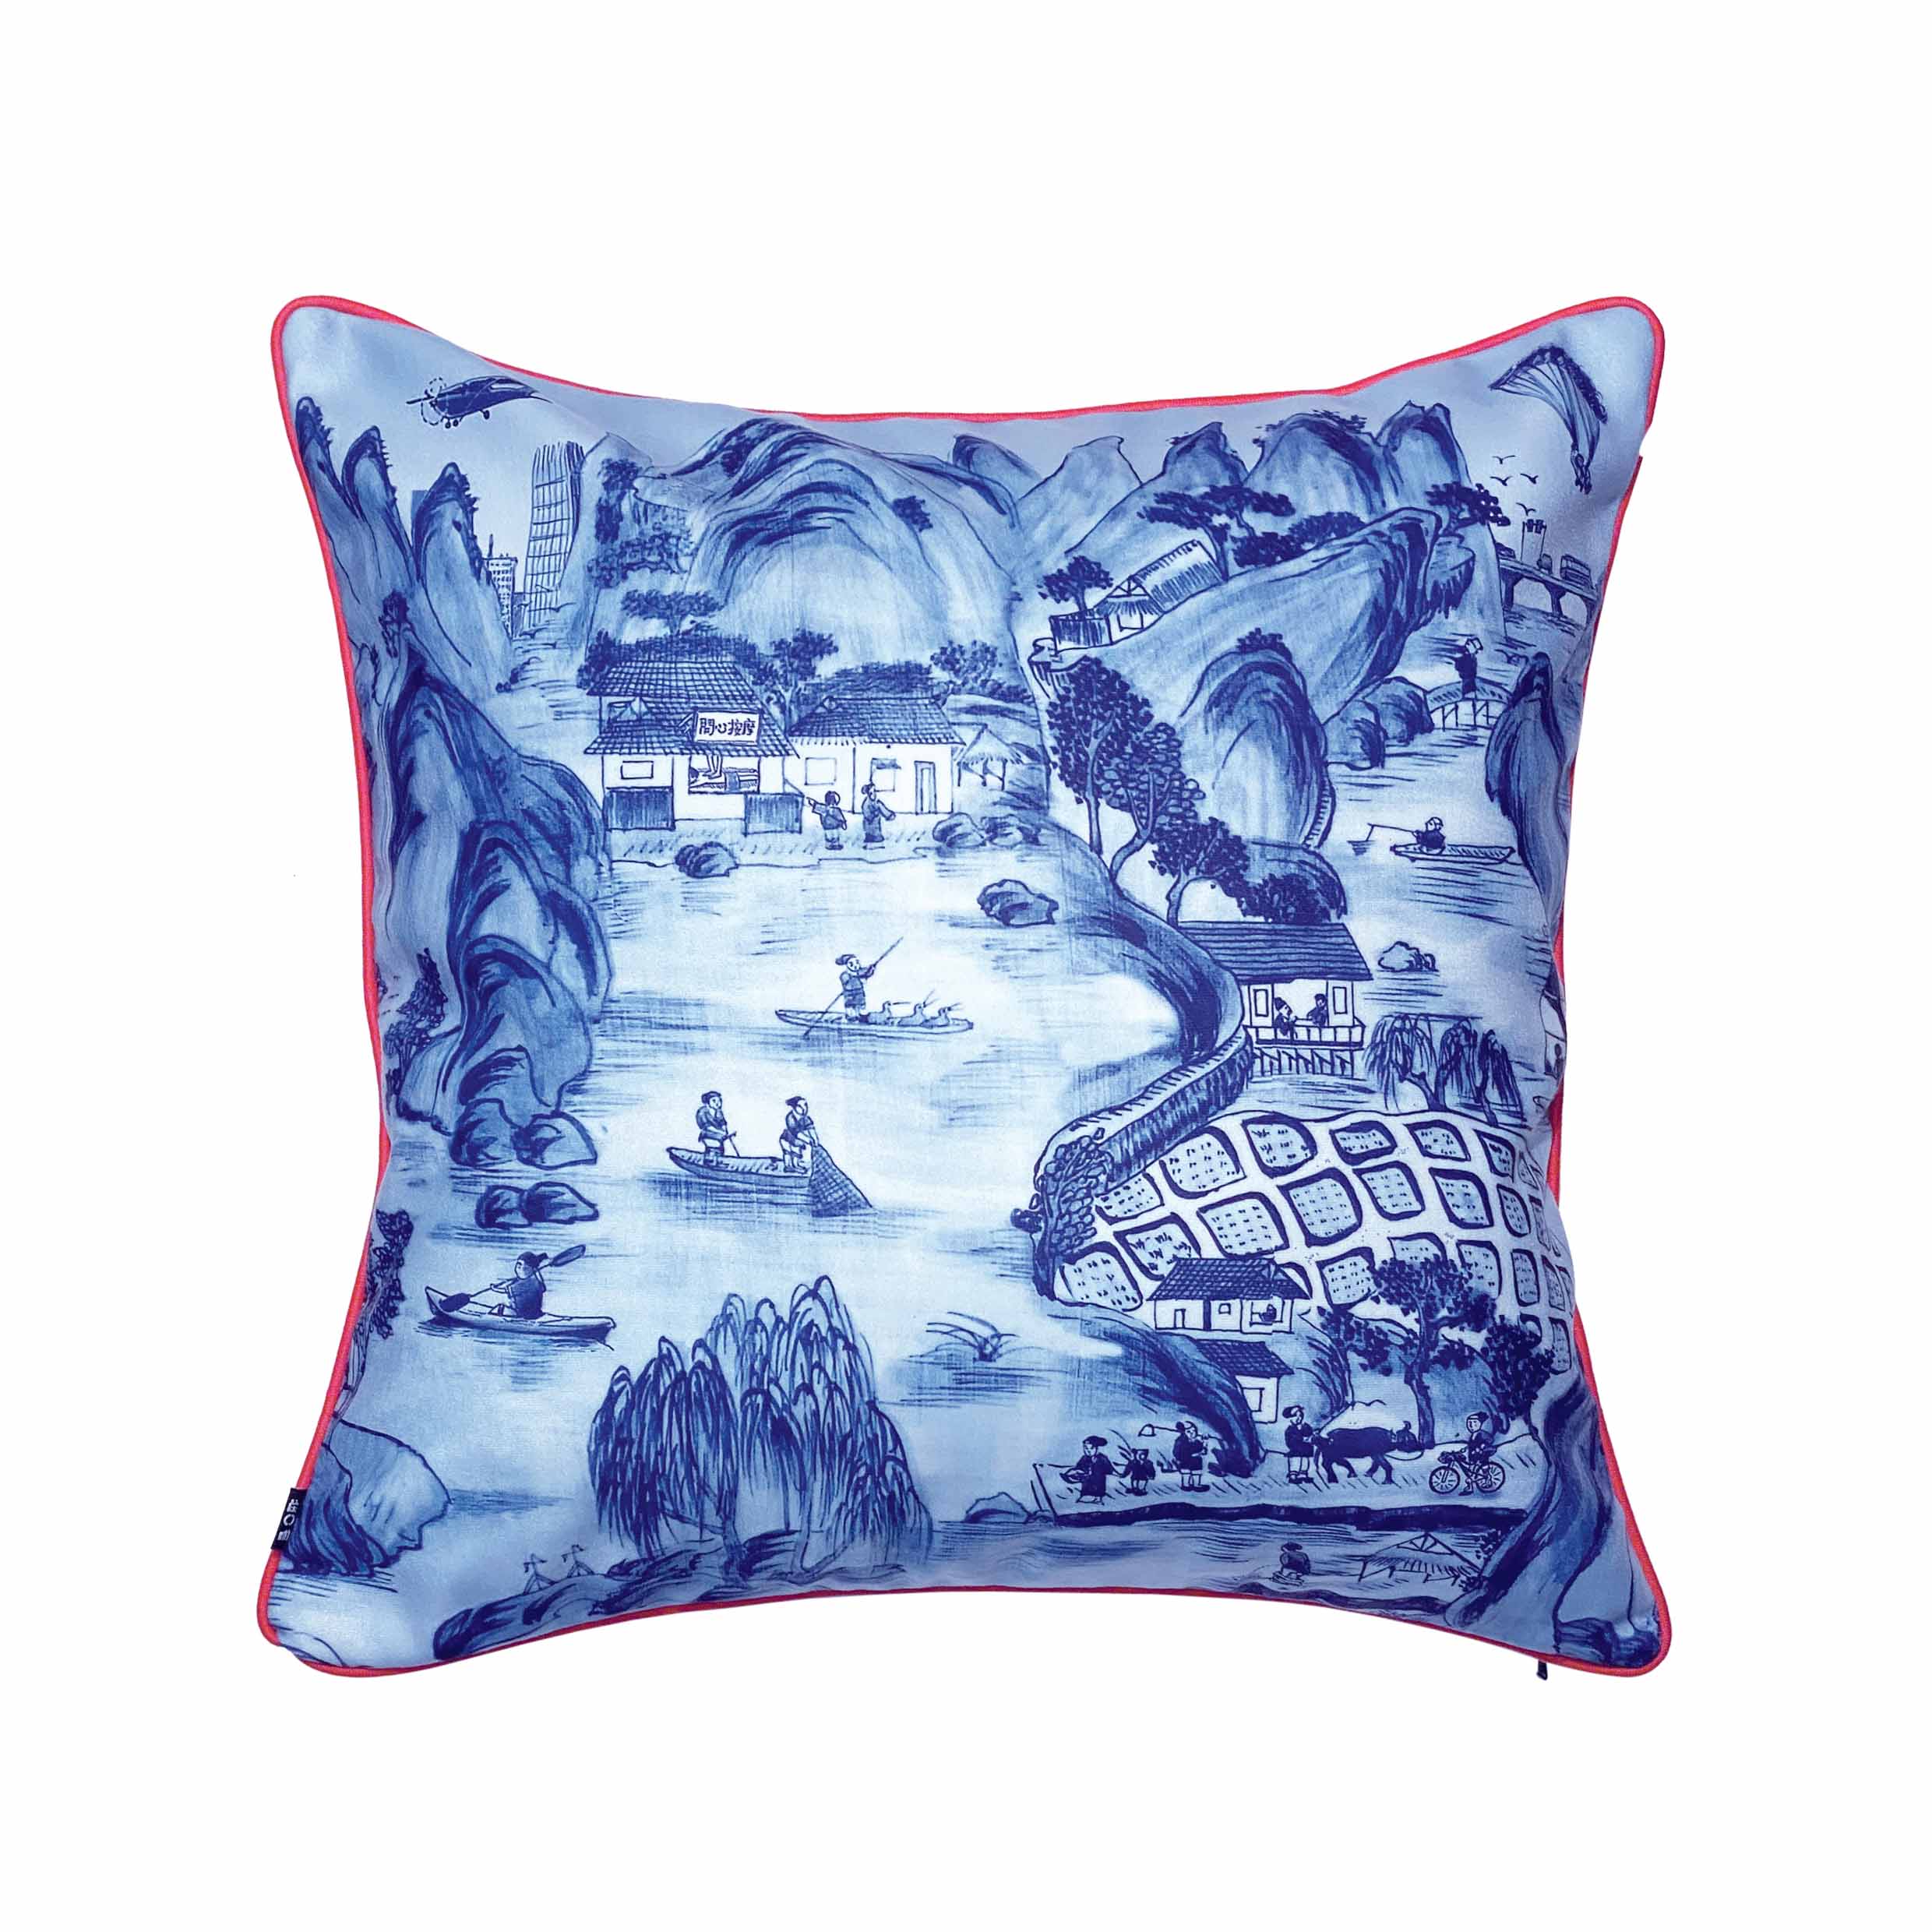 Blue Arcadia Double-Sided Cushion Cover, 45 x 45 cm